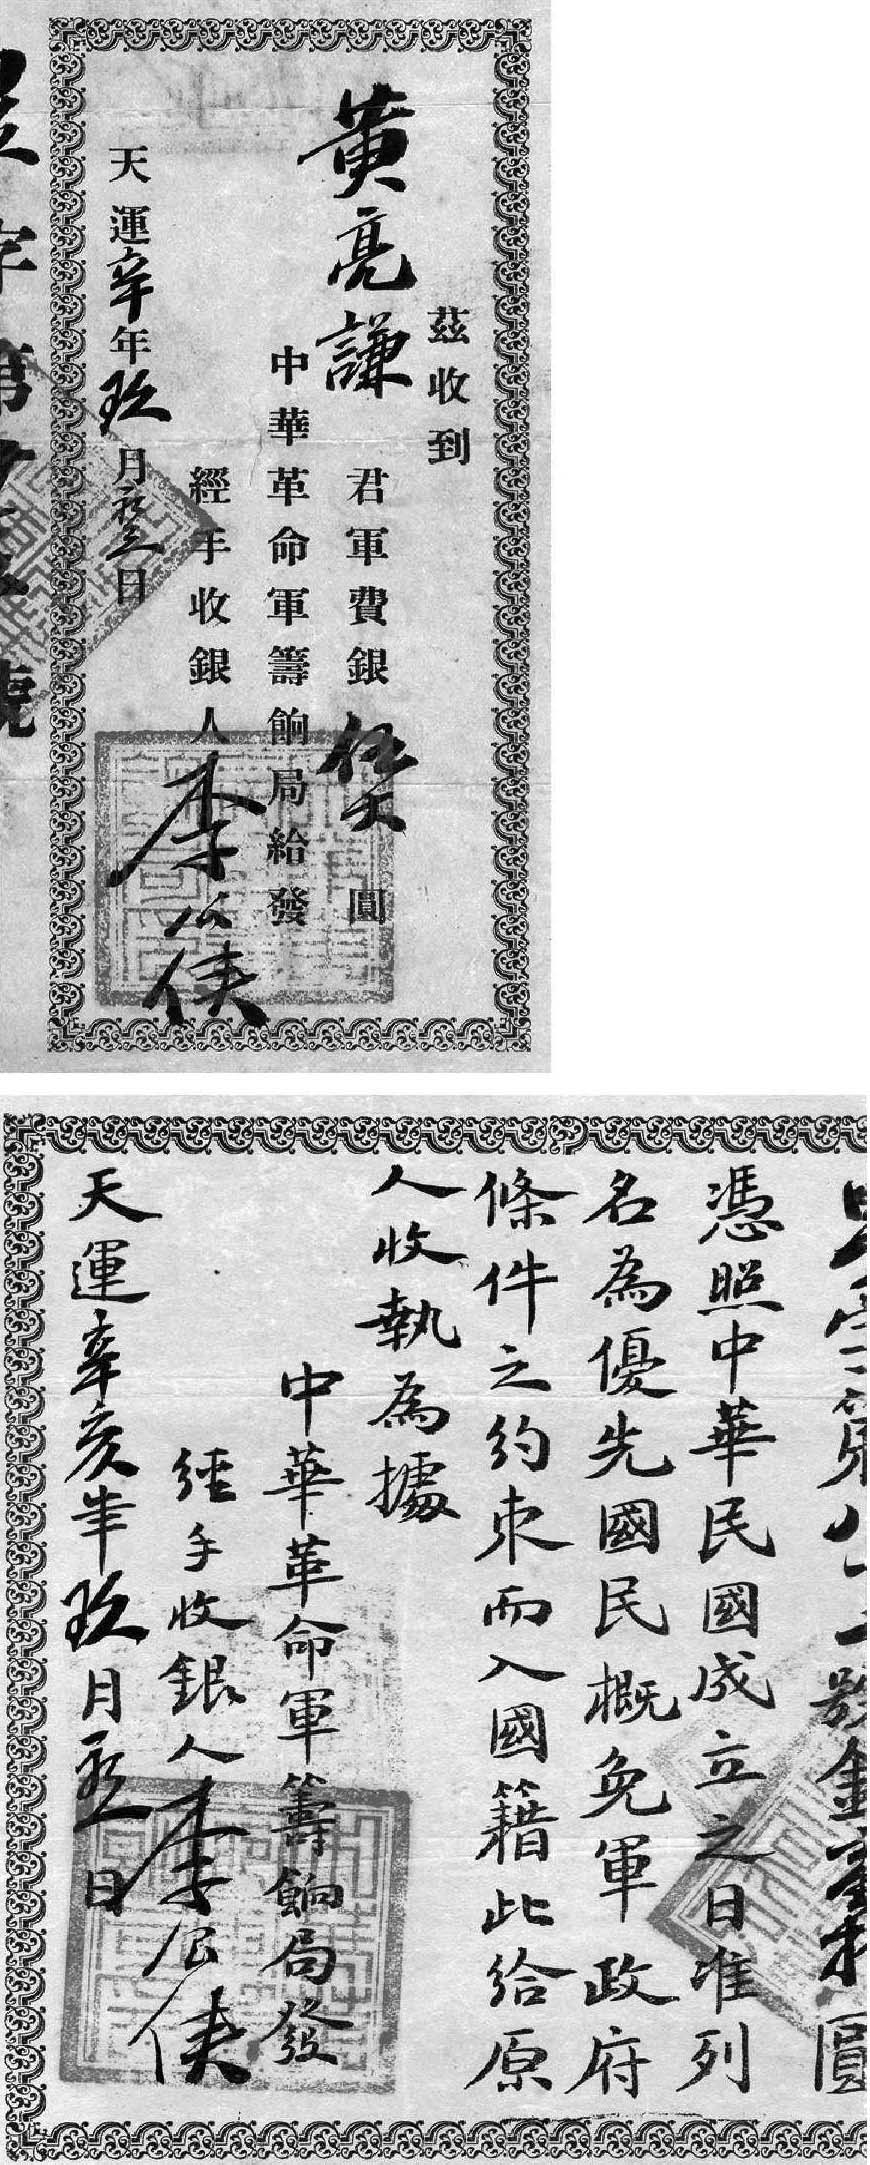 1911年中华革命军筹饷局签发的中华革命军捐款收据及存根